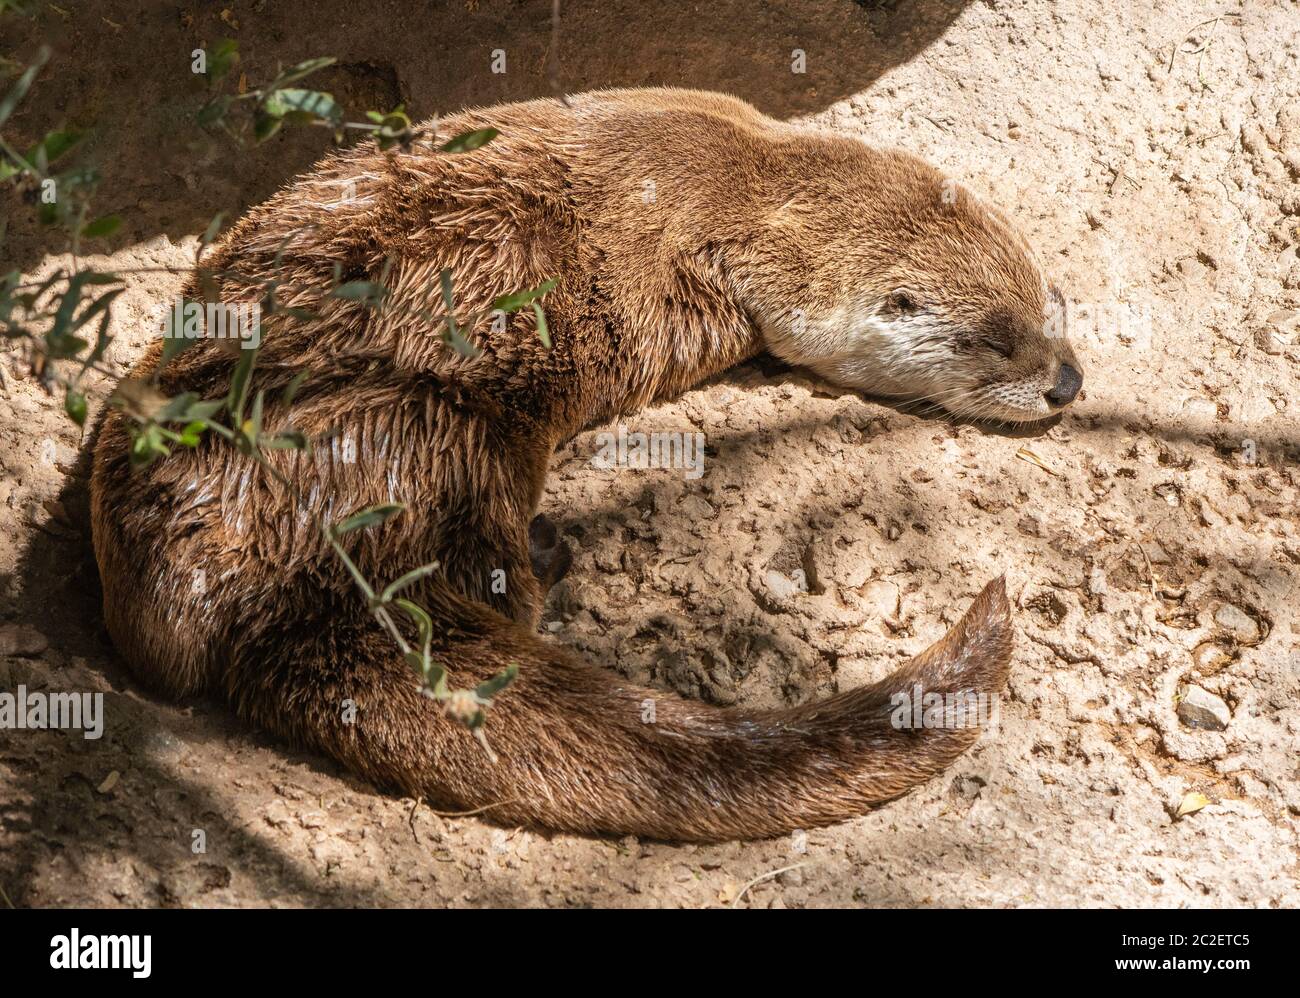 River Otter, Lutra canadensis, si trova su una roccia nel museo del deserto dell'Arizona-sonora, vicino a Tucson, Arizona. (Prigioniero) Foto Stock